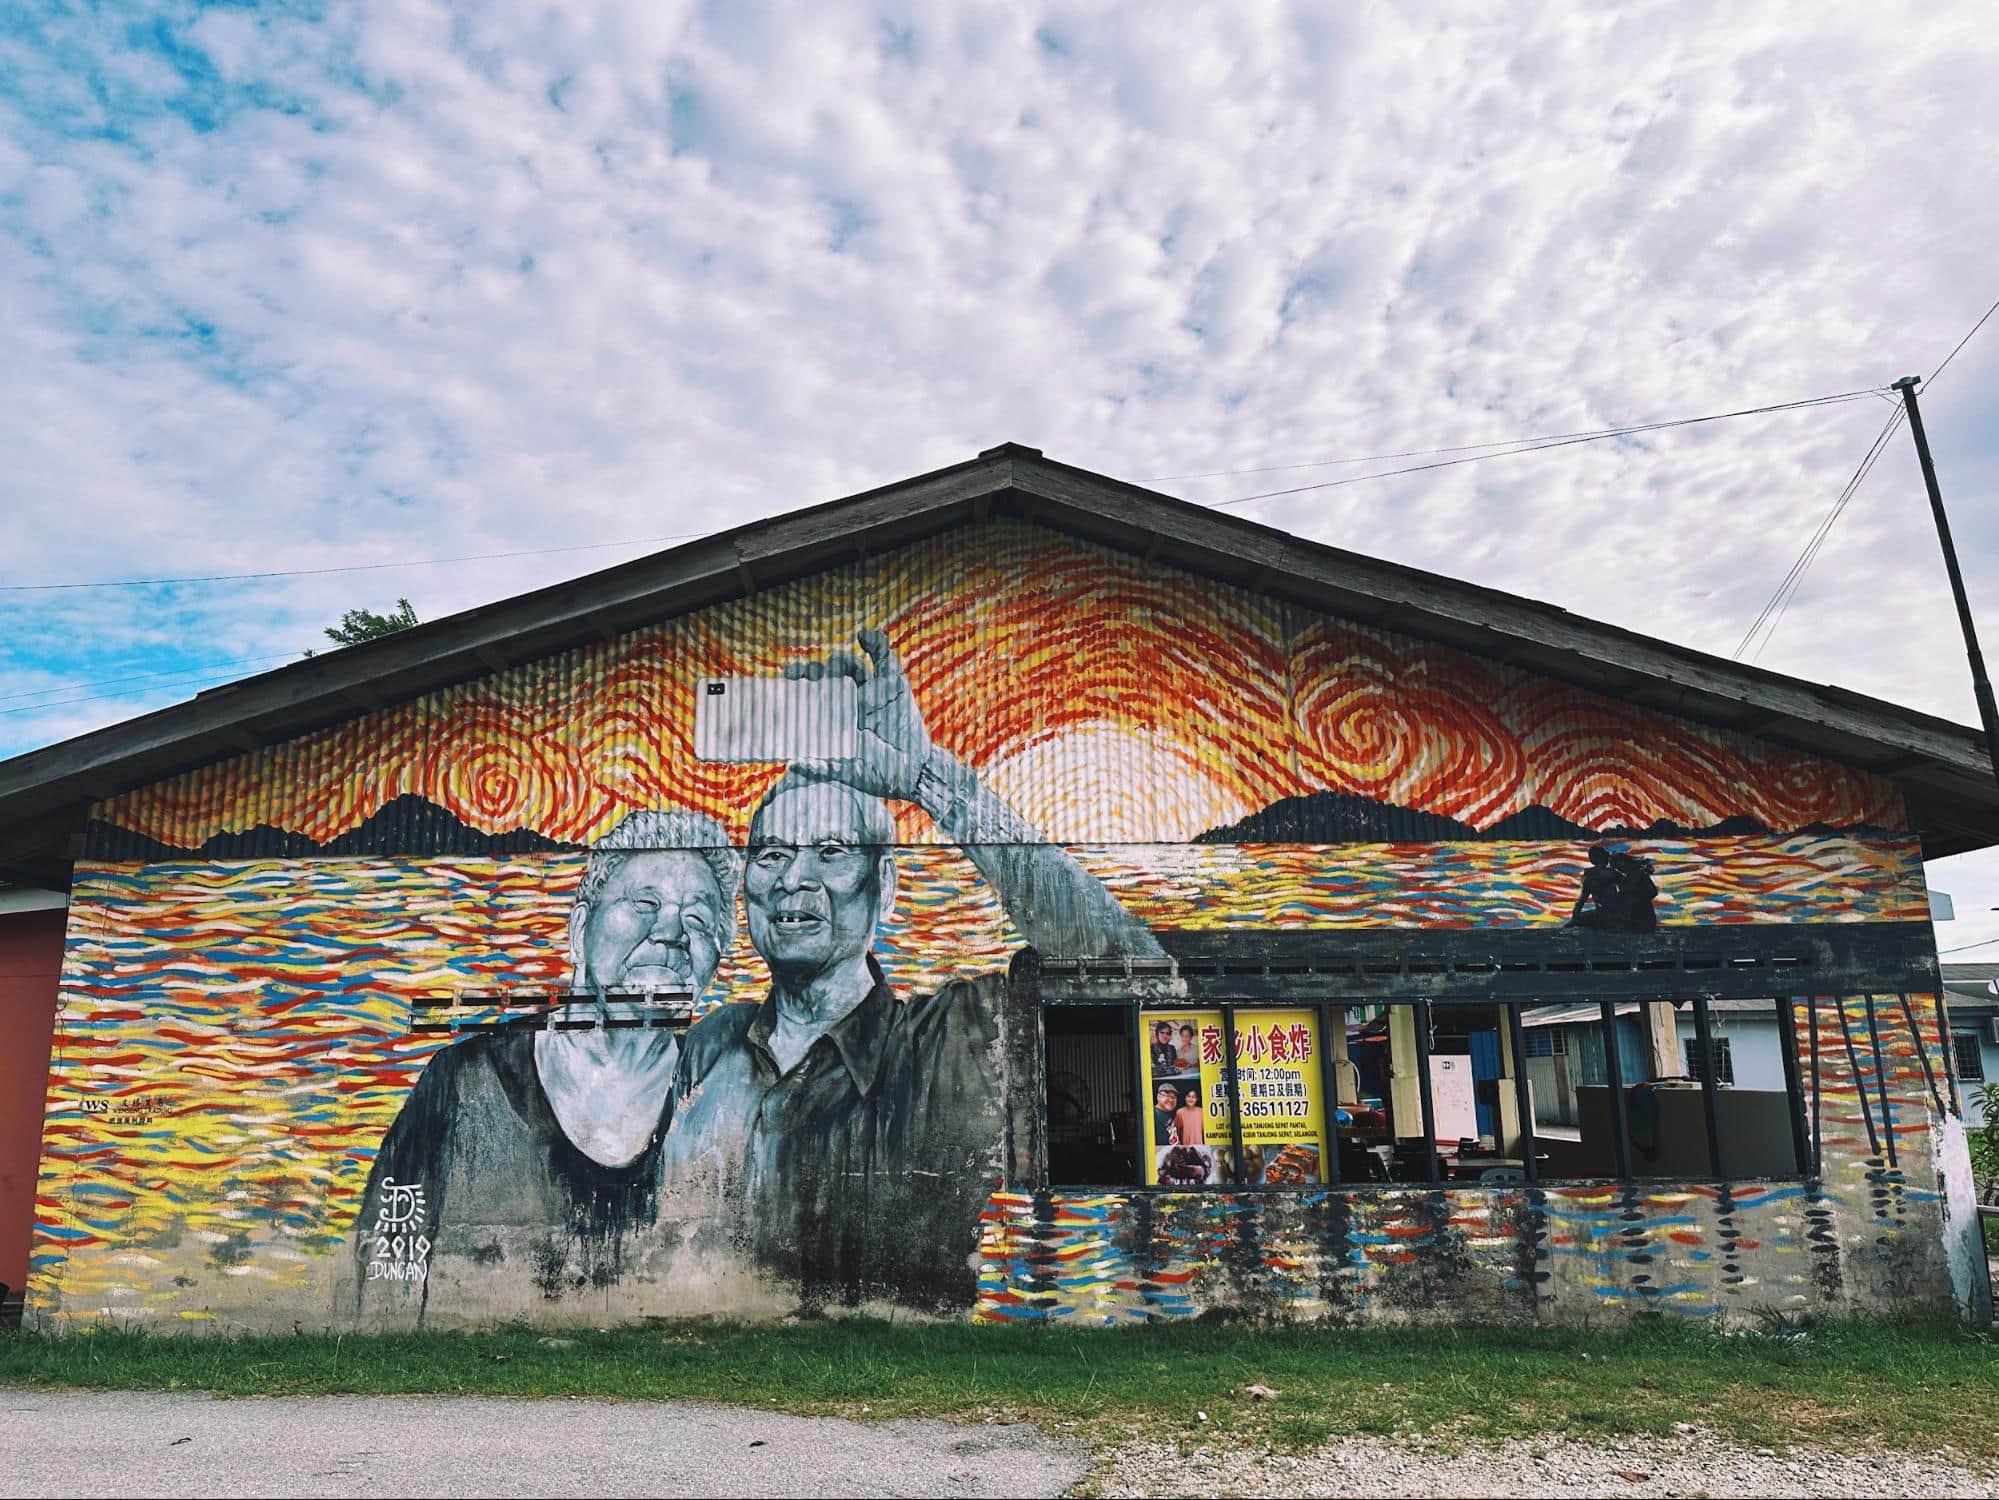 Things to do in Tanjung Sepat - street art mural